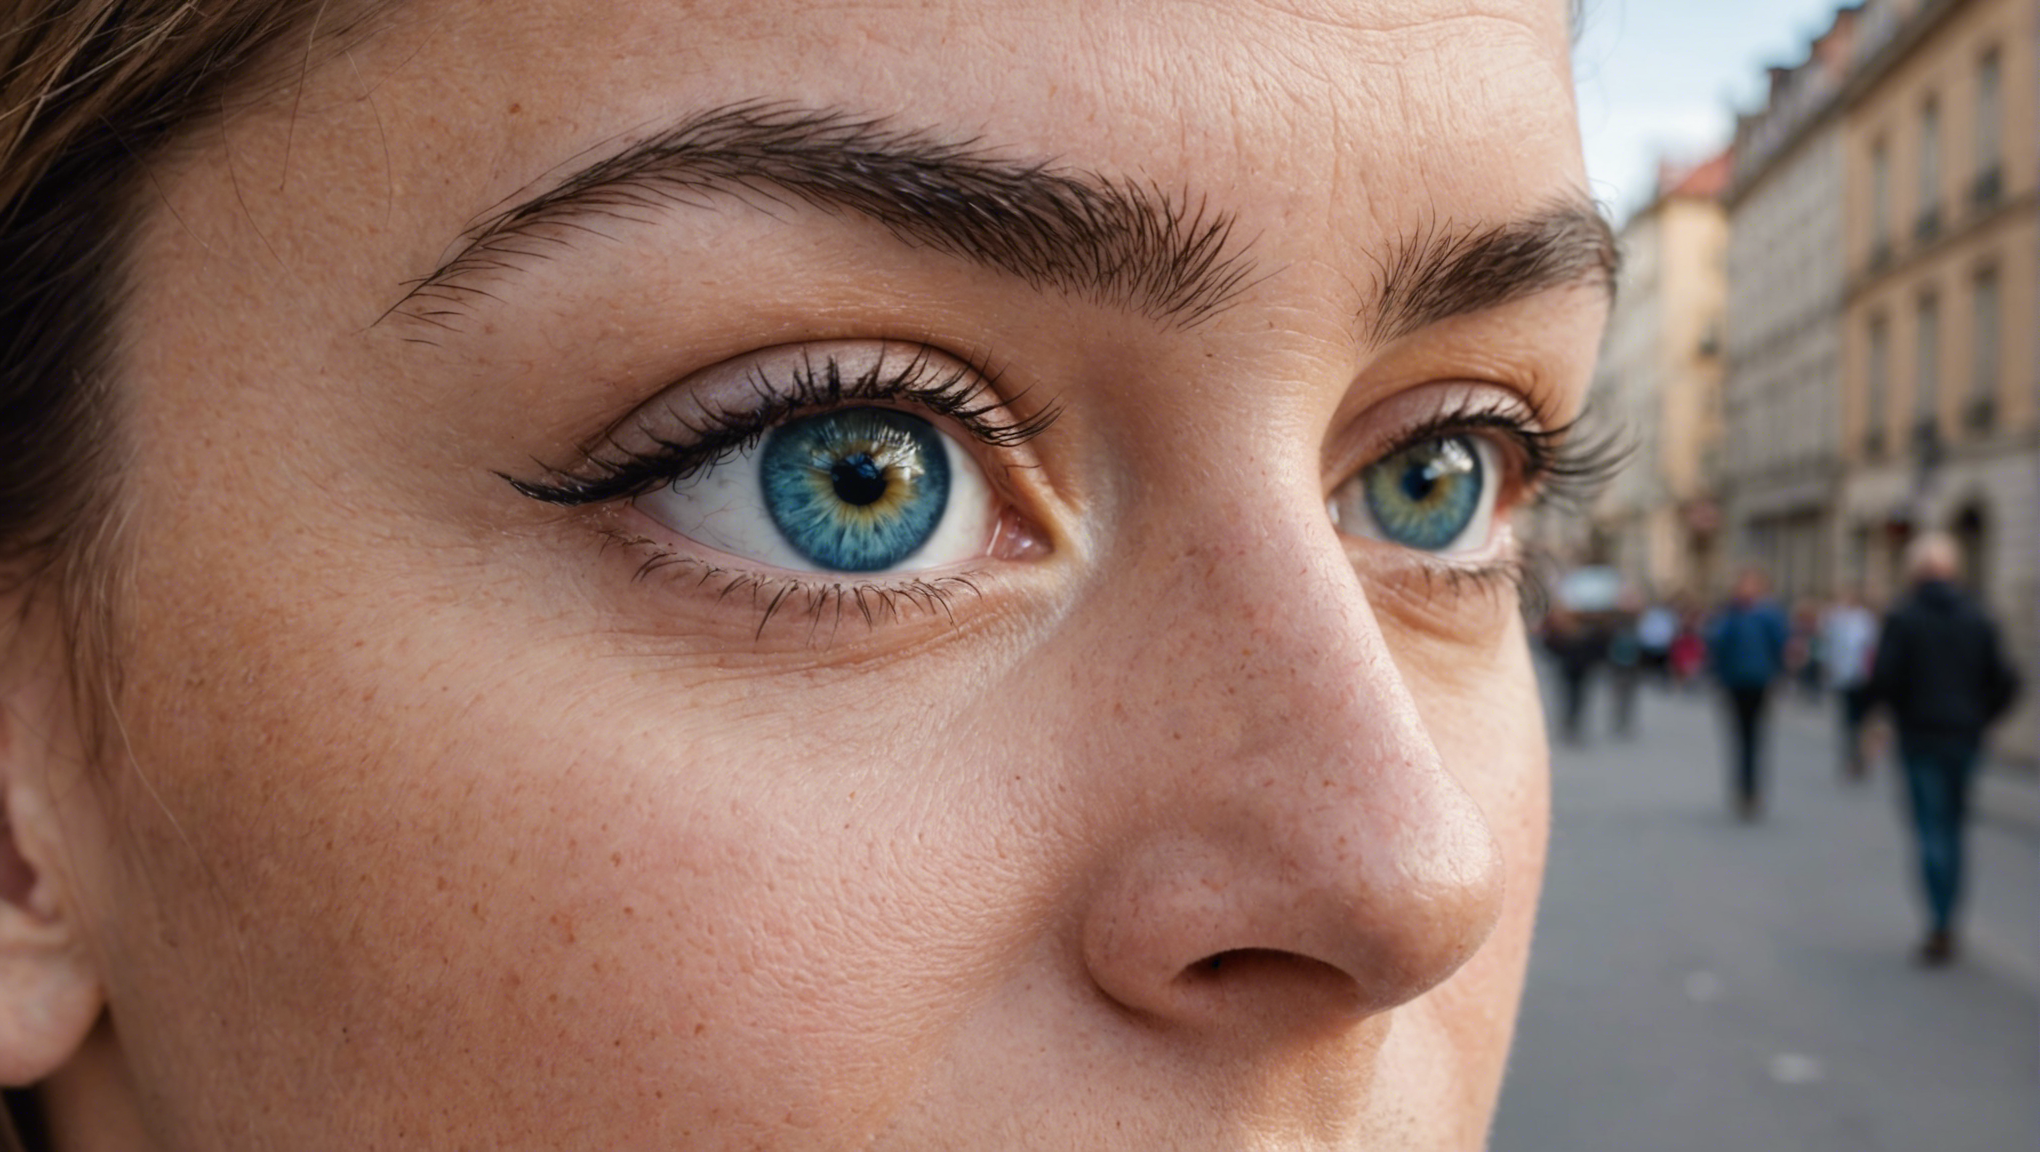 opération des yeux à lyon : découvrez la solution pour une vision parfaite avec des spécialistes qualifiés.